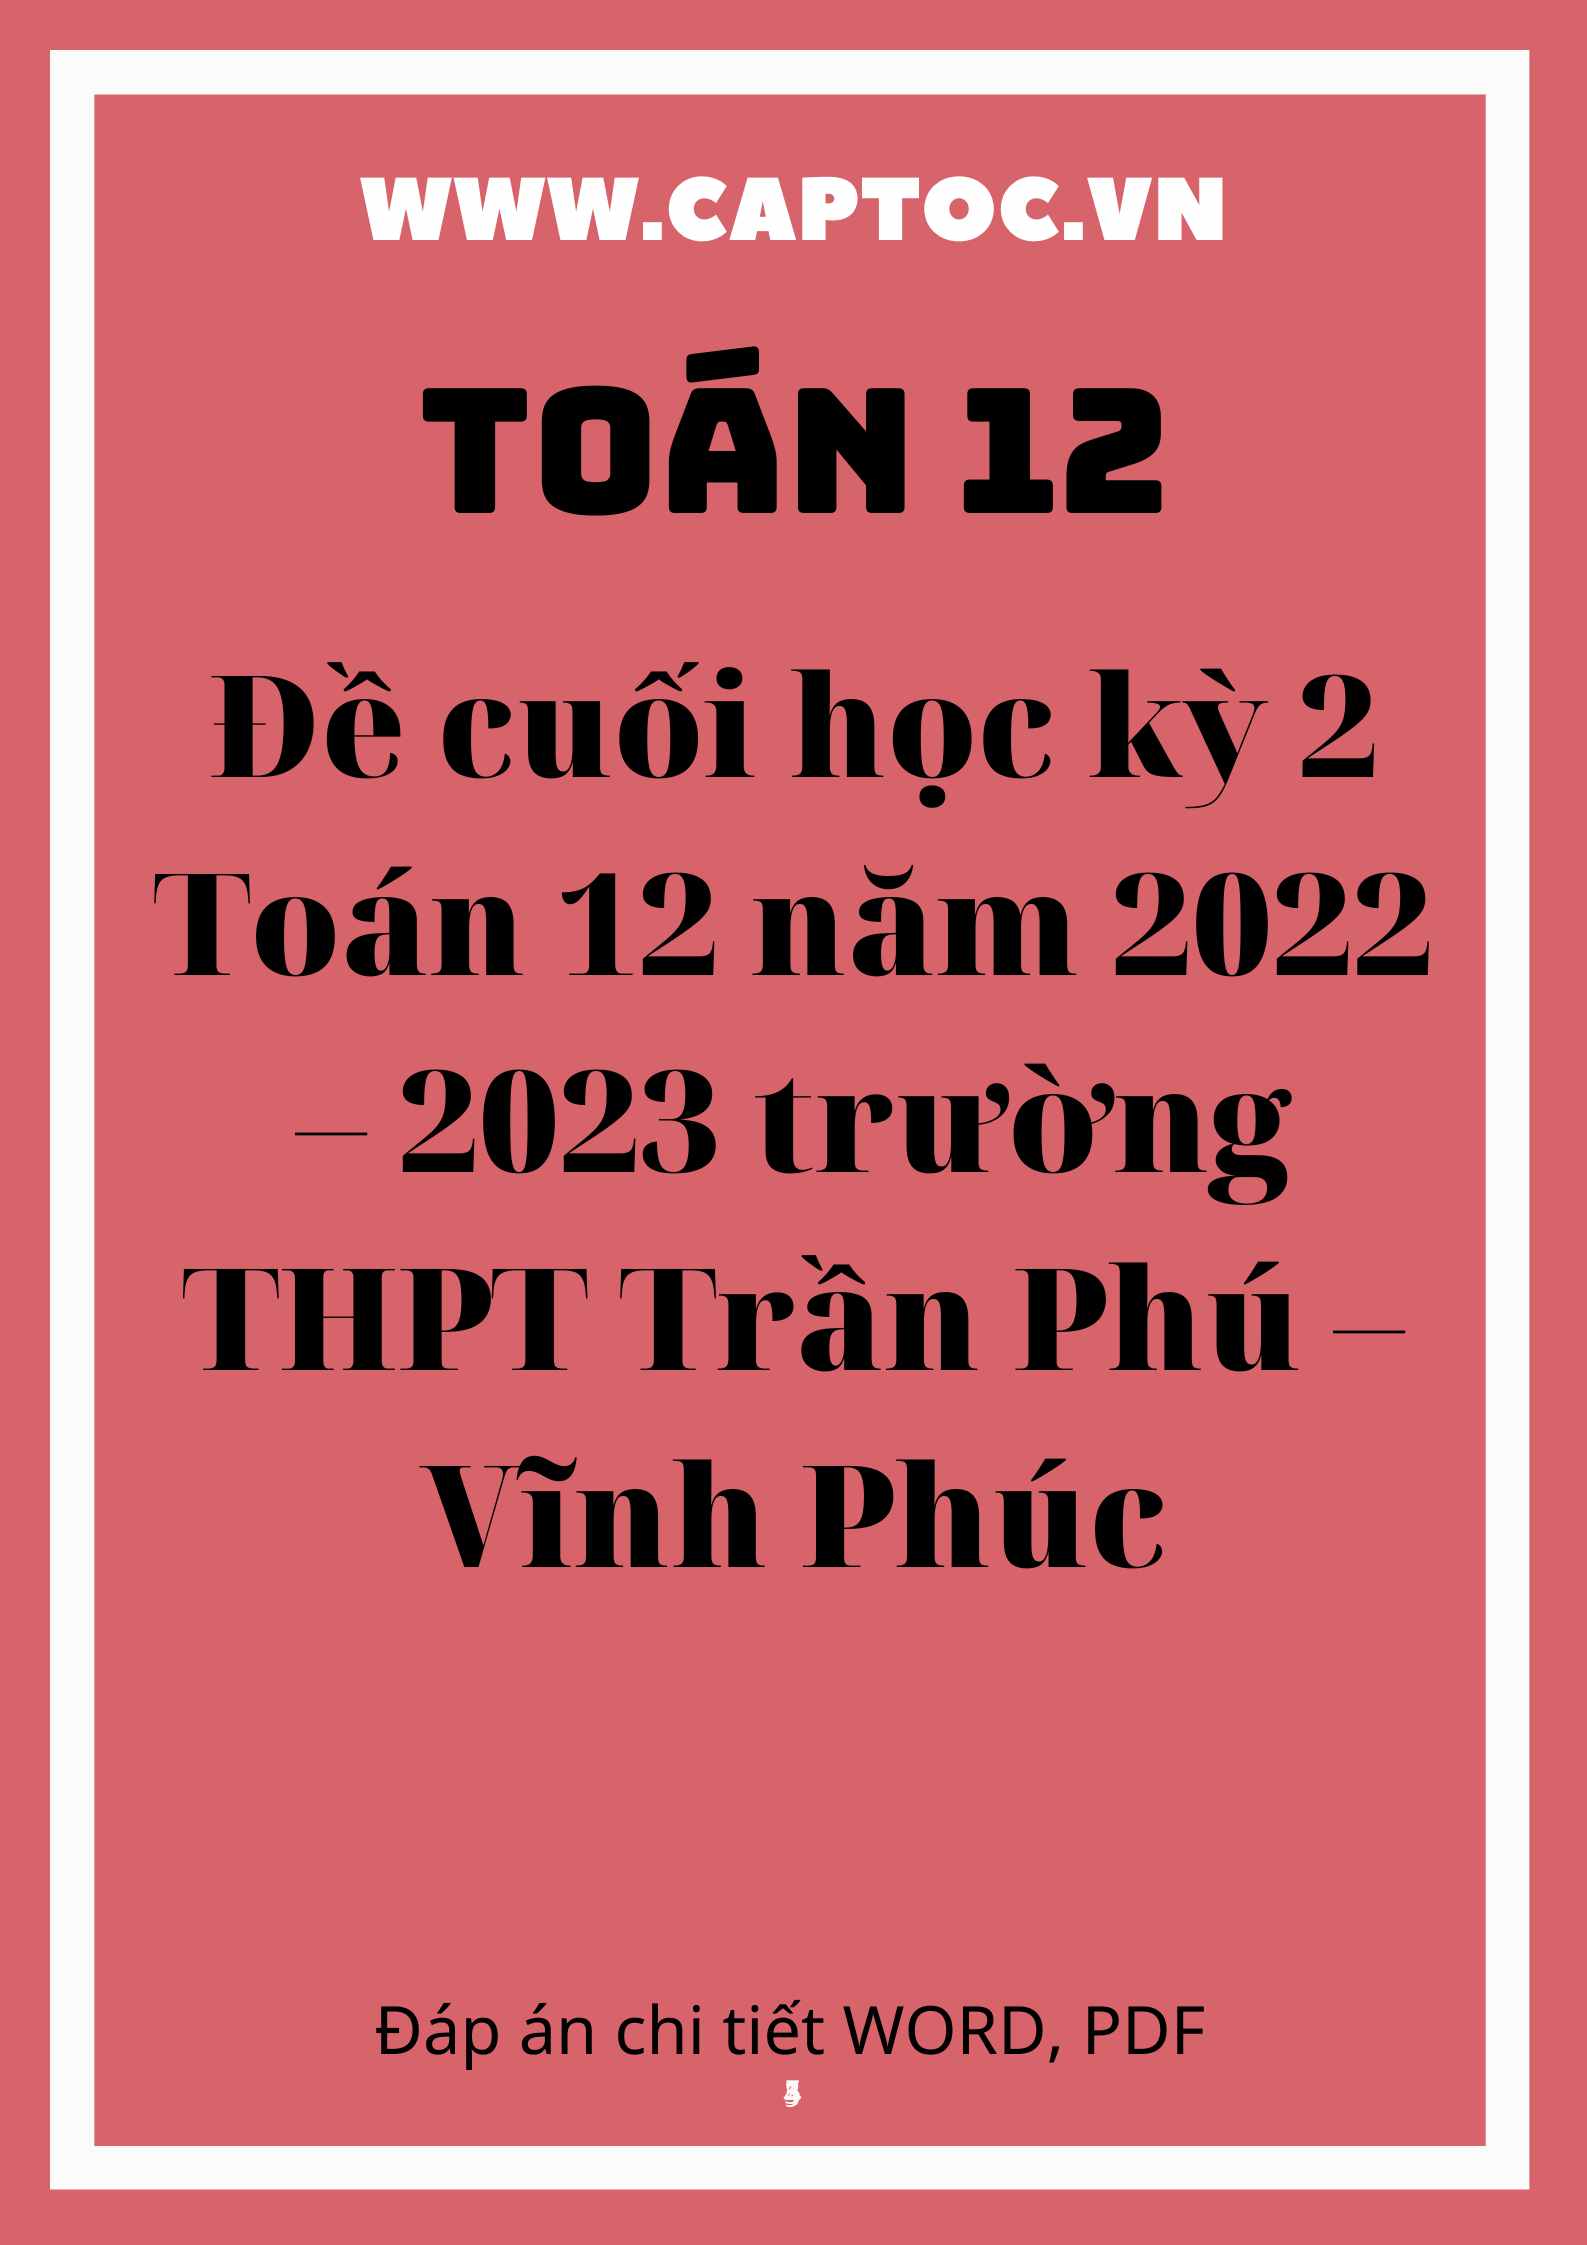 Đề cuối học kỳ 2 Toán 12 năm 2022 – 2023 trường THPT Trần Phú – Vĩnh Phúc